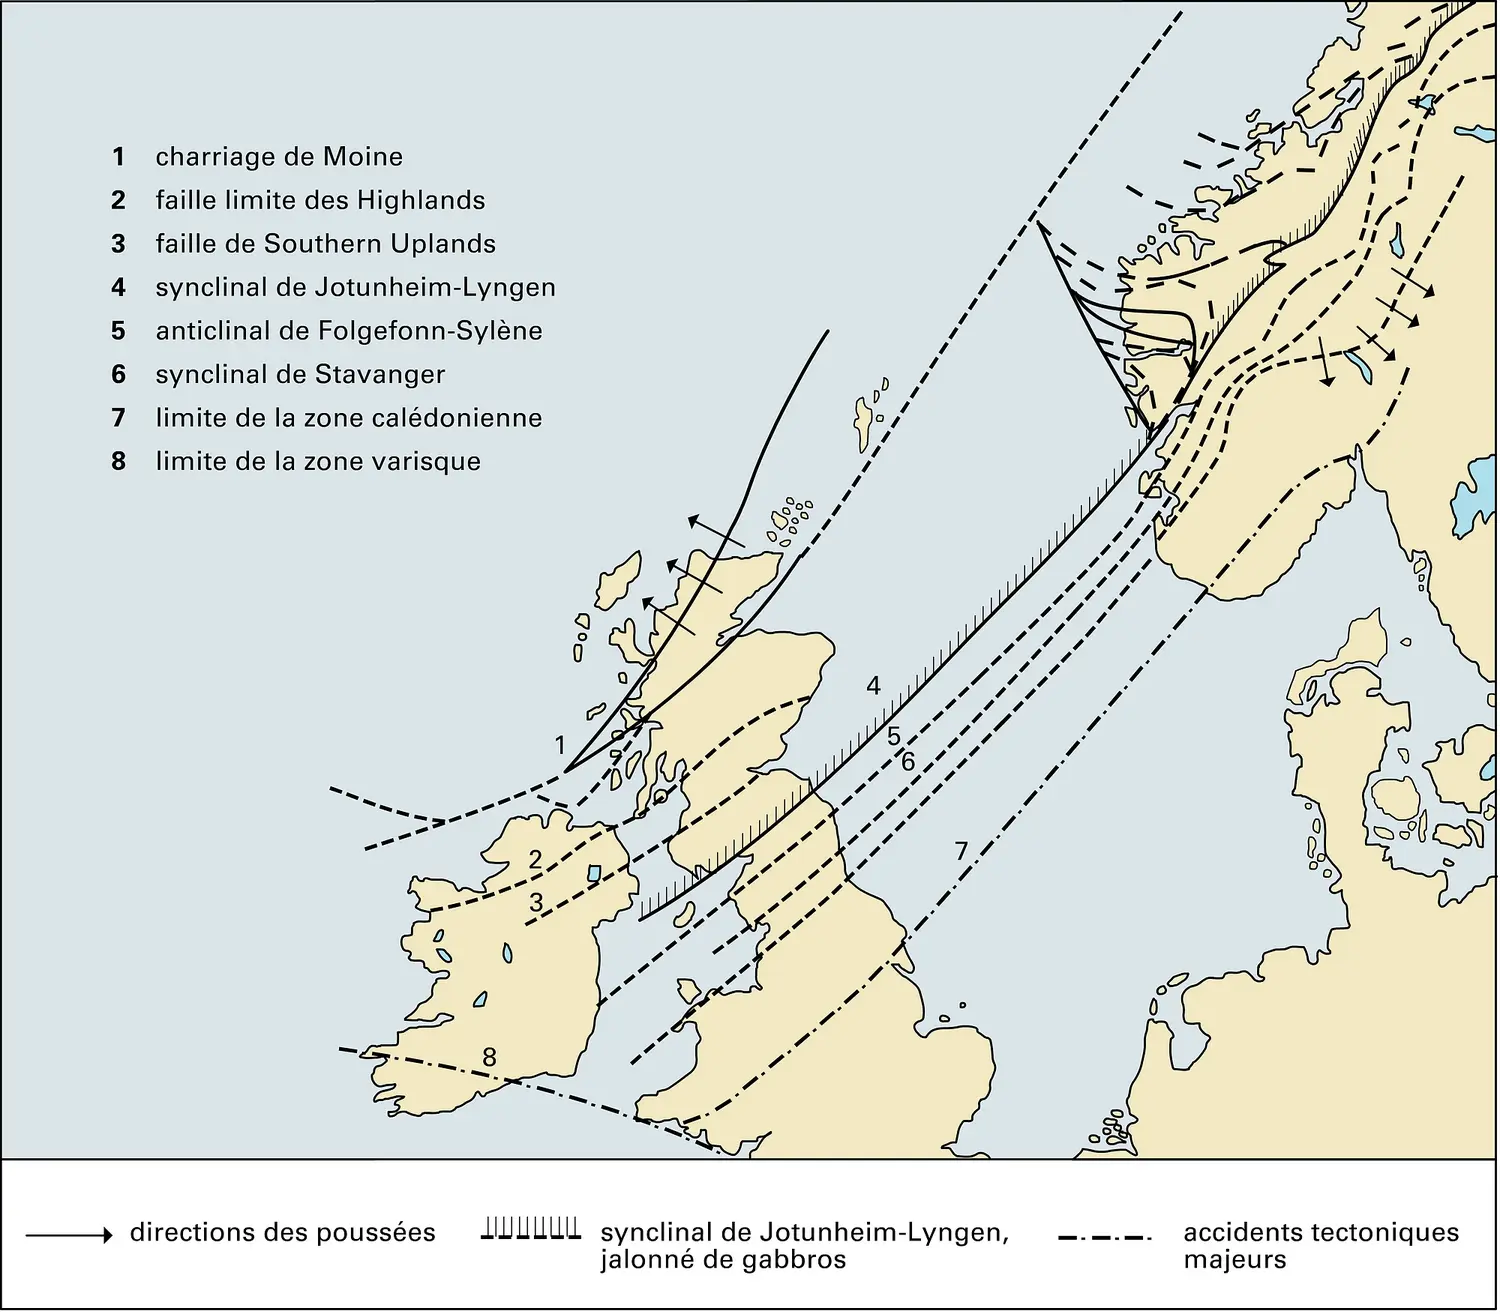 Zones tectoniques de la chaîne calédonienne de Norvège et de Grande-Bretagne